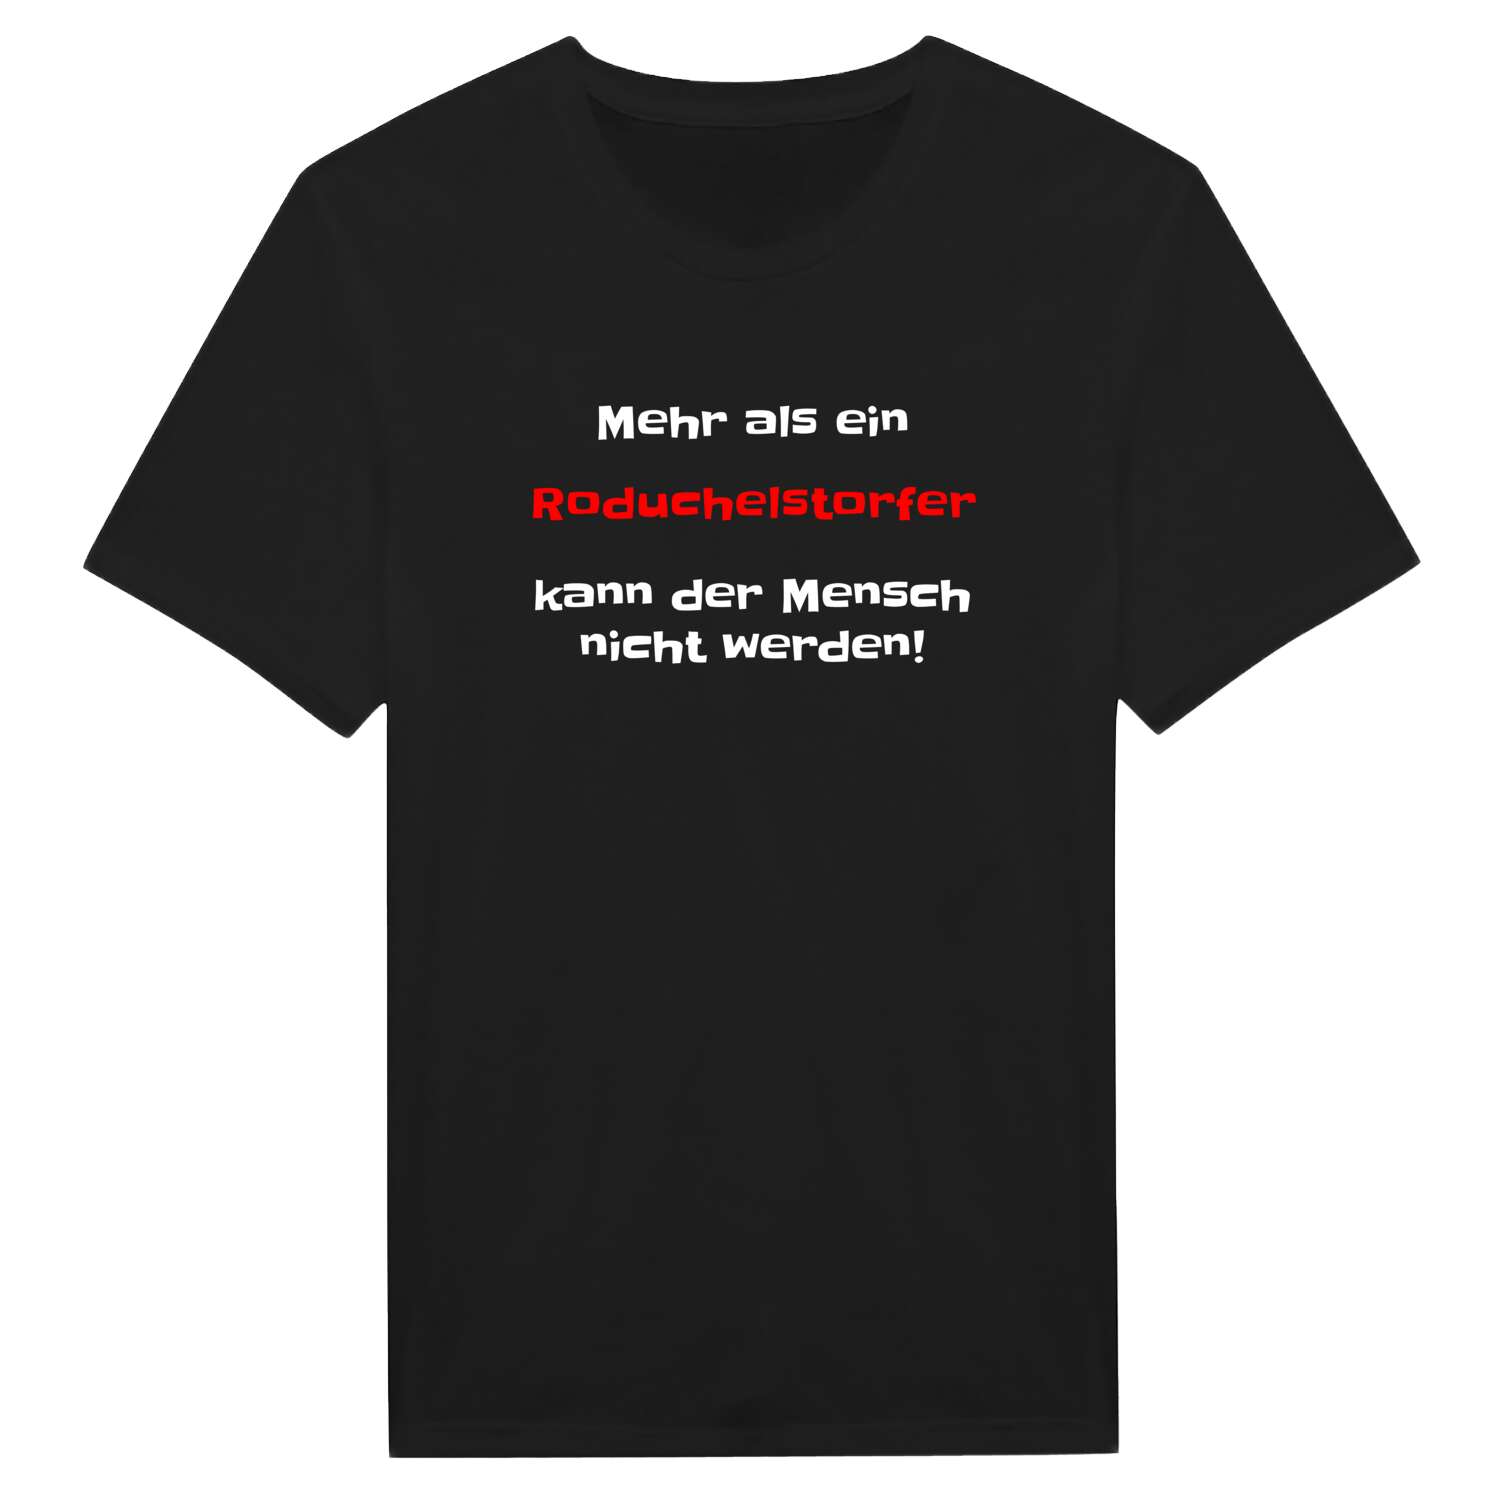 Roduchelstorf T-Shirt »Mehr als ein«